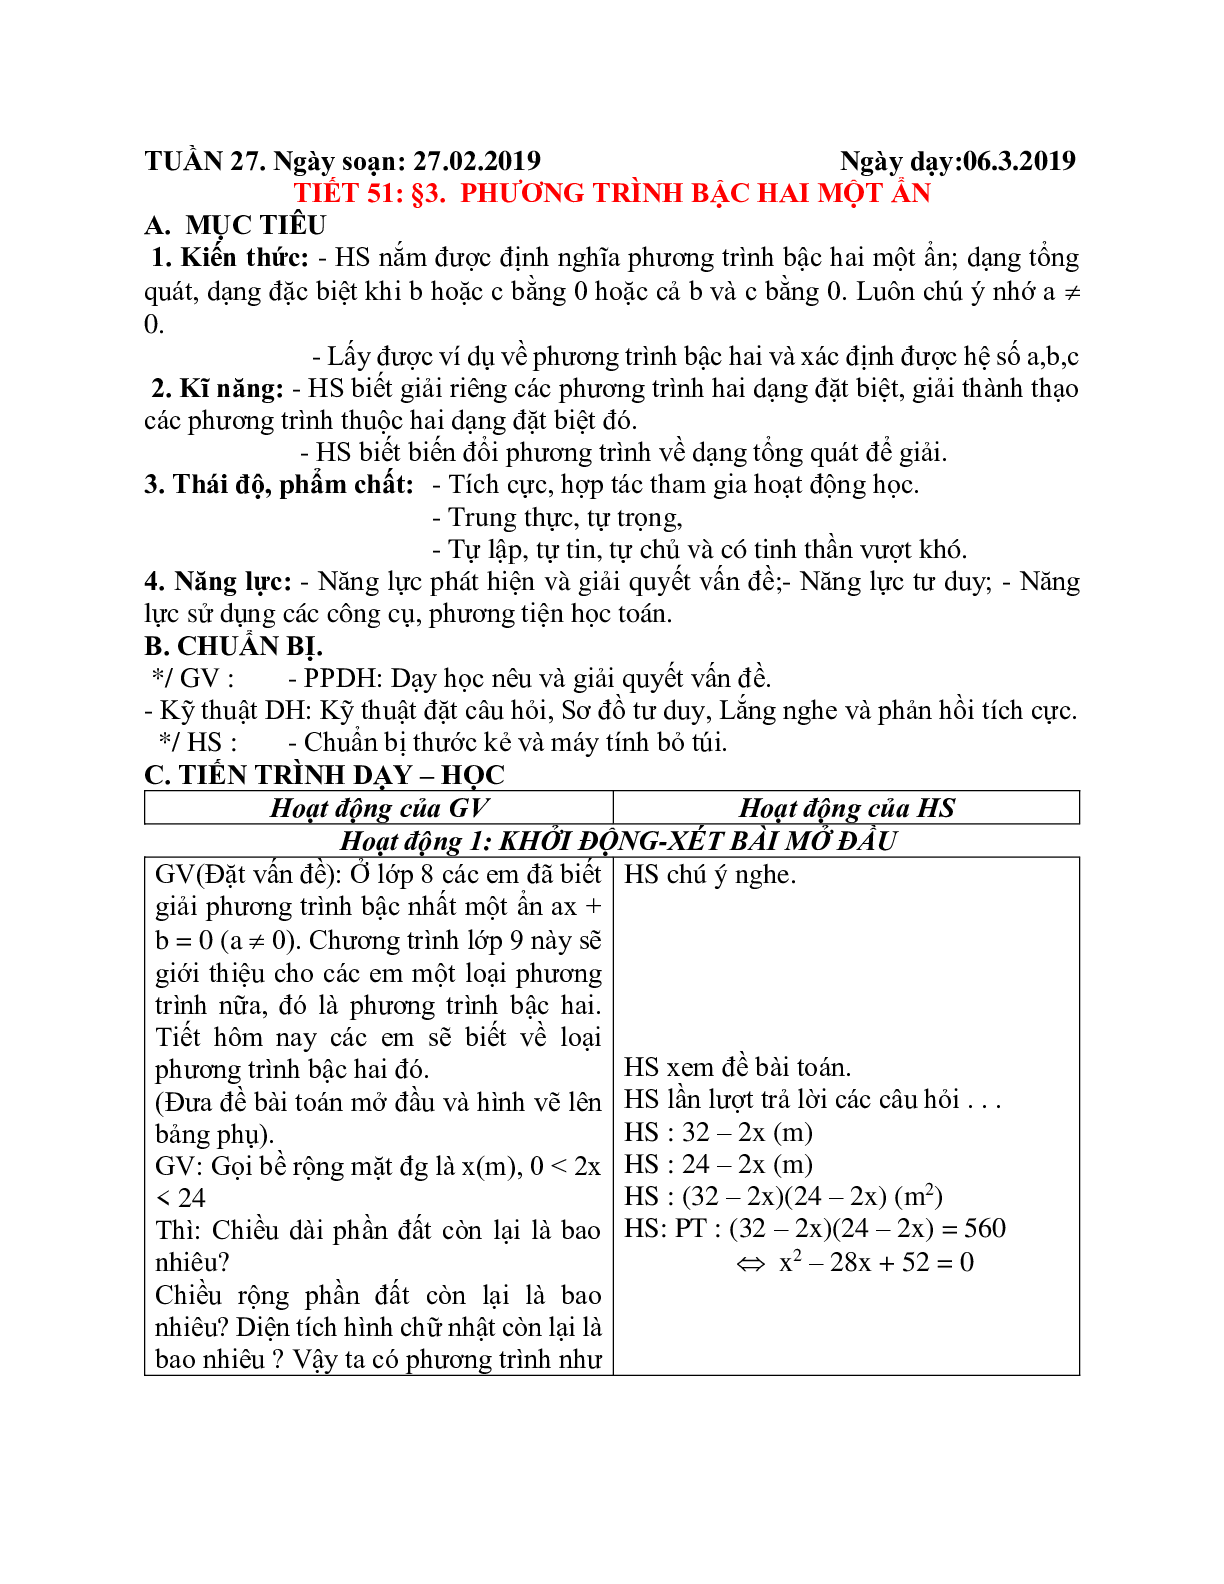 Giáo án Phương trình bậc hai một ẩn (2023) mới nhất - Toán 9 (trang 1)